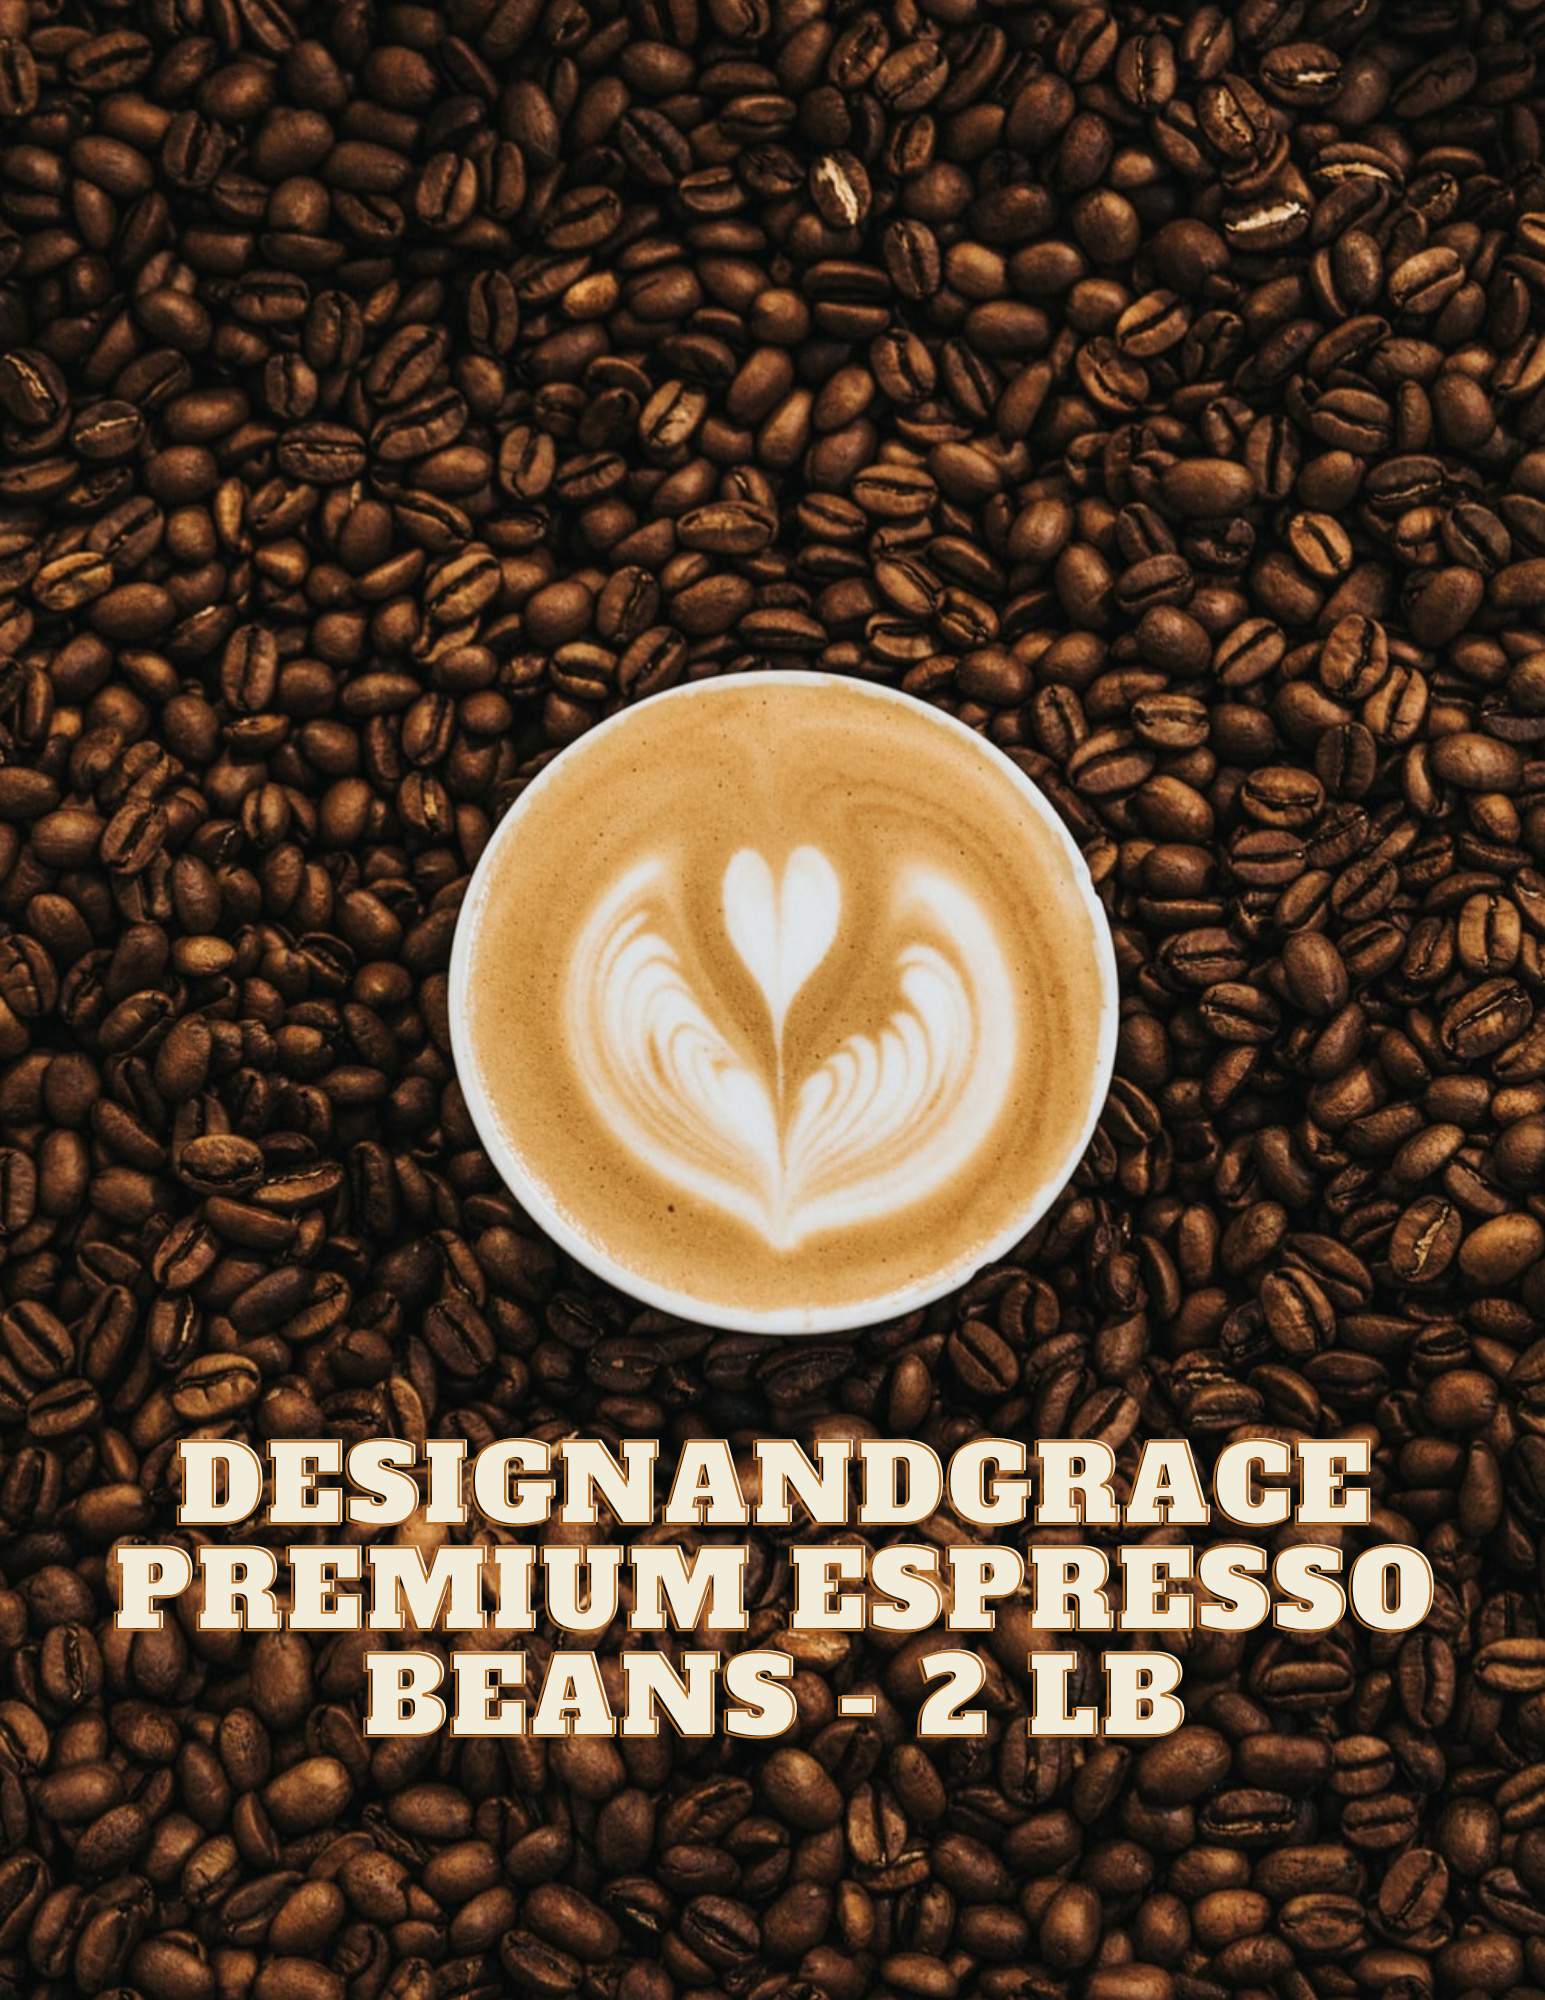 DesignandGrace Premium Espresso Coffee Beans - 2 lb